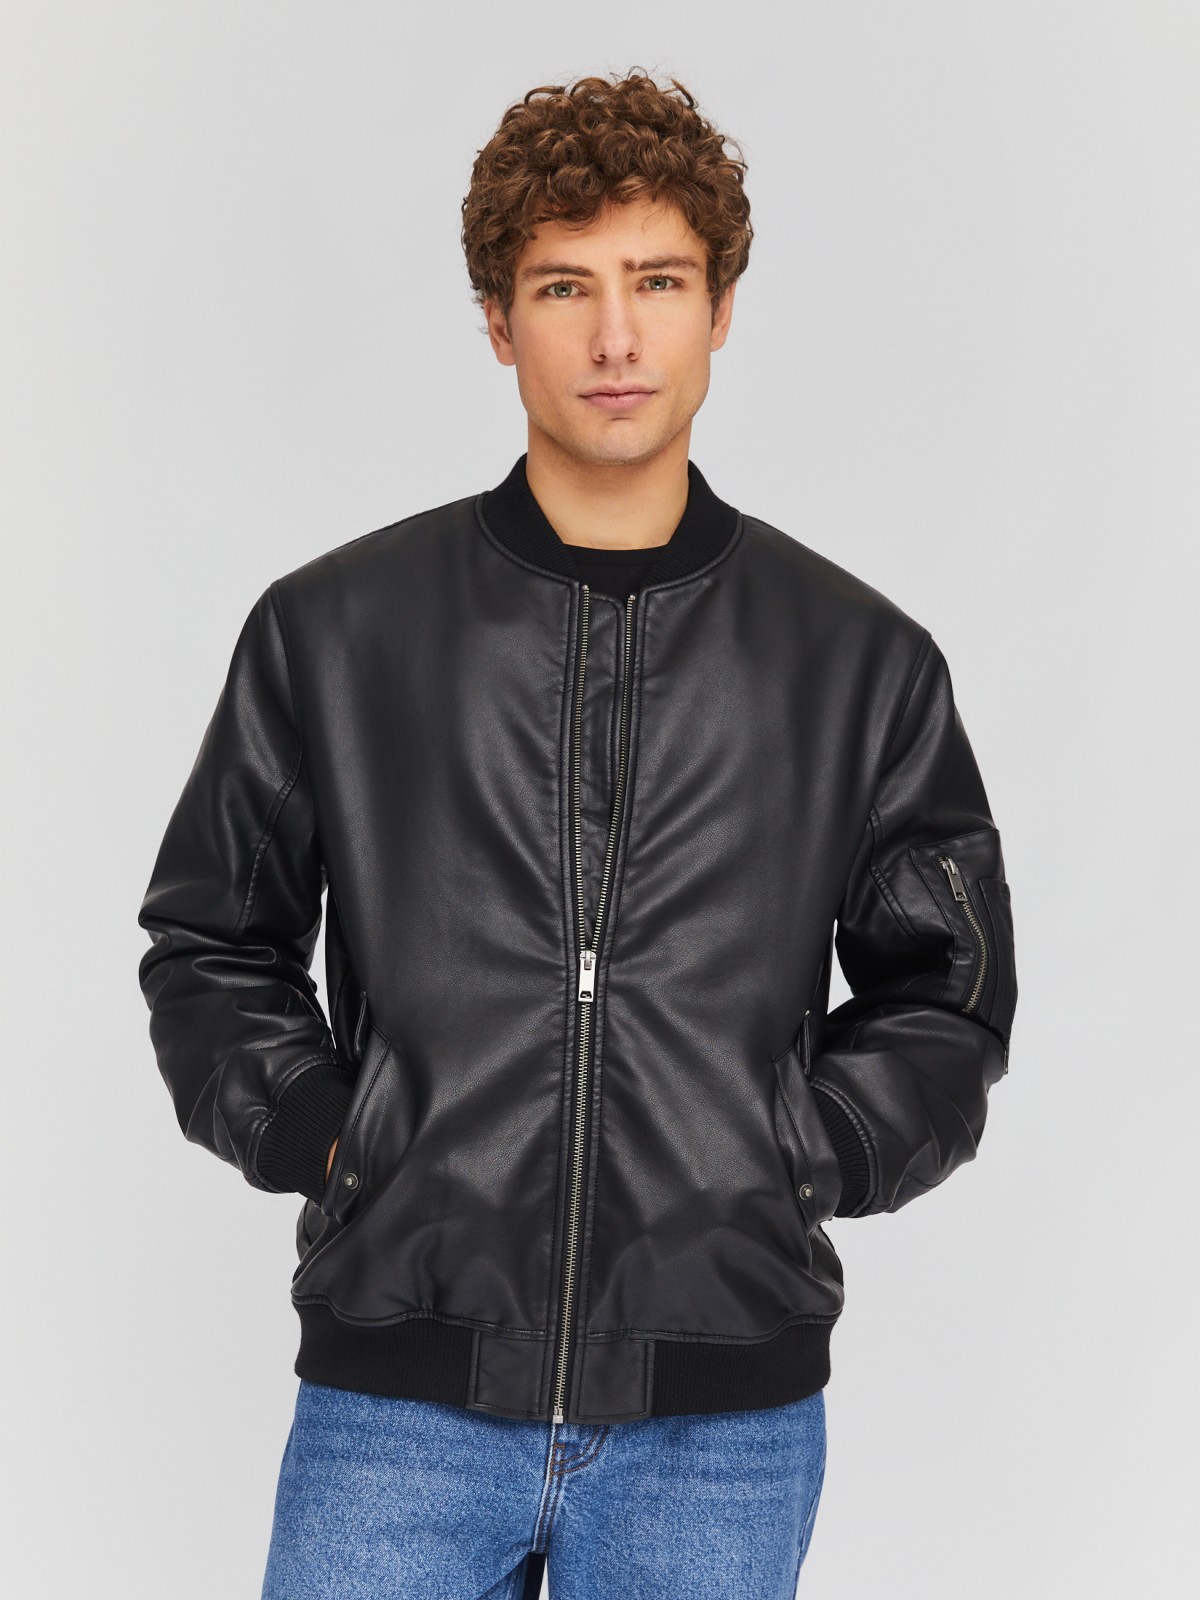 Утеплённая куртка-бомбер из экокожи на синтепоне zolla 014135150134, цвет черный, размер M